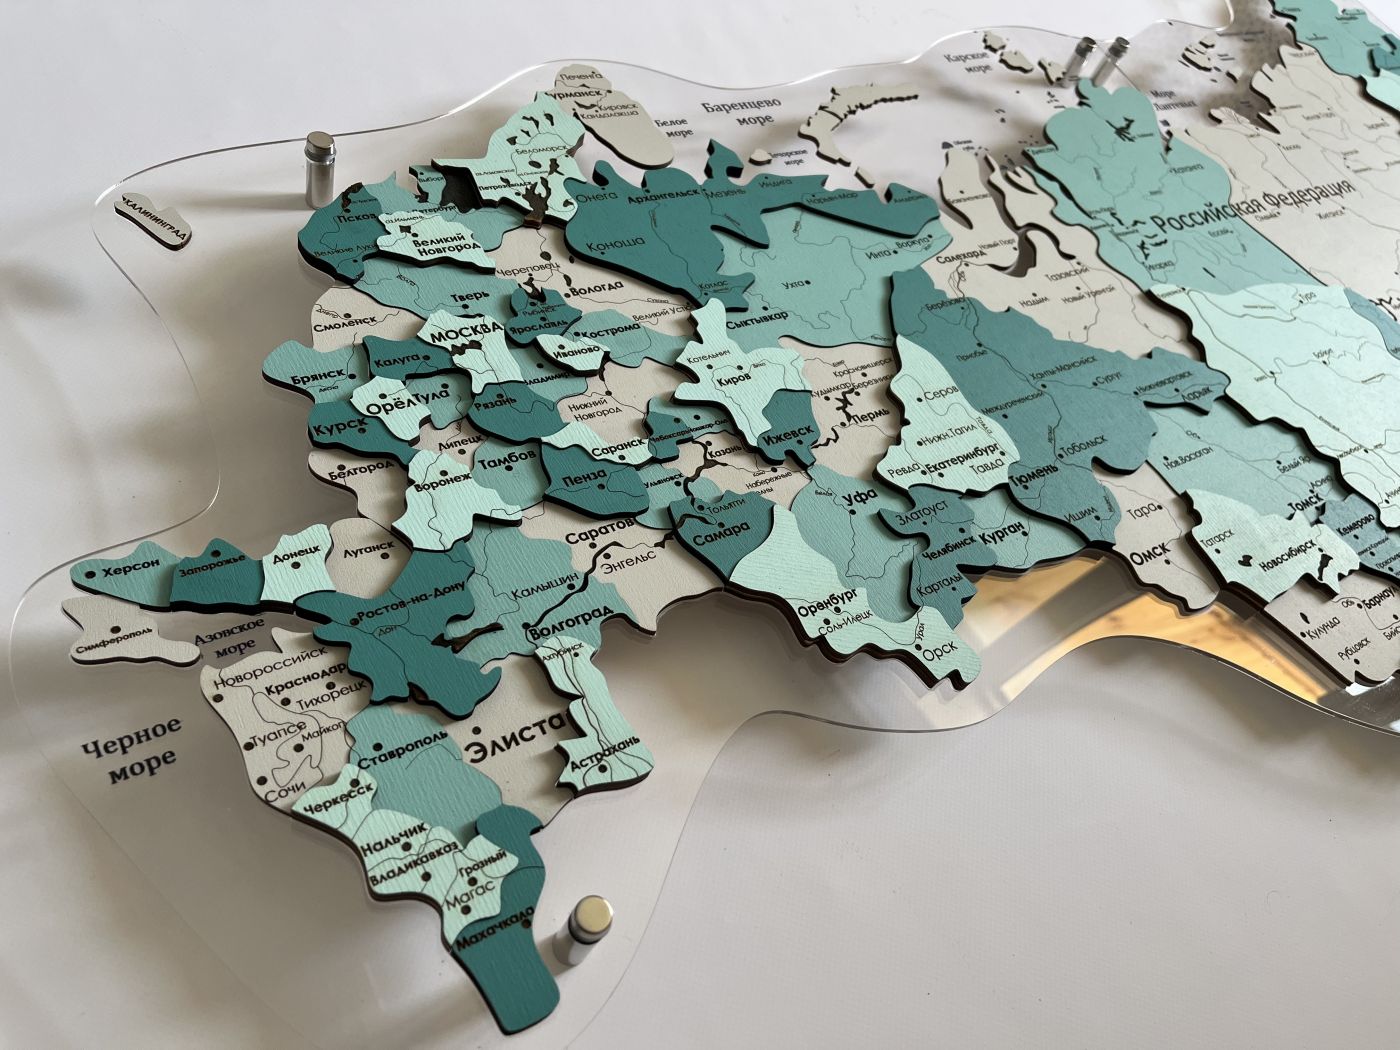 Цвет "Енисейск", Многоуровневая карта РОССИИ из дерева, на подложке из орг.стекла, на русском языке, с полной гравировкой, с черной гравировкой на орг.стекле